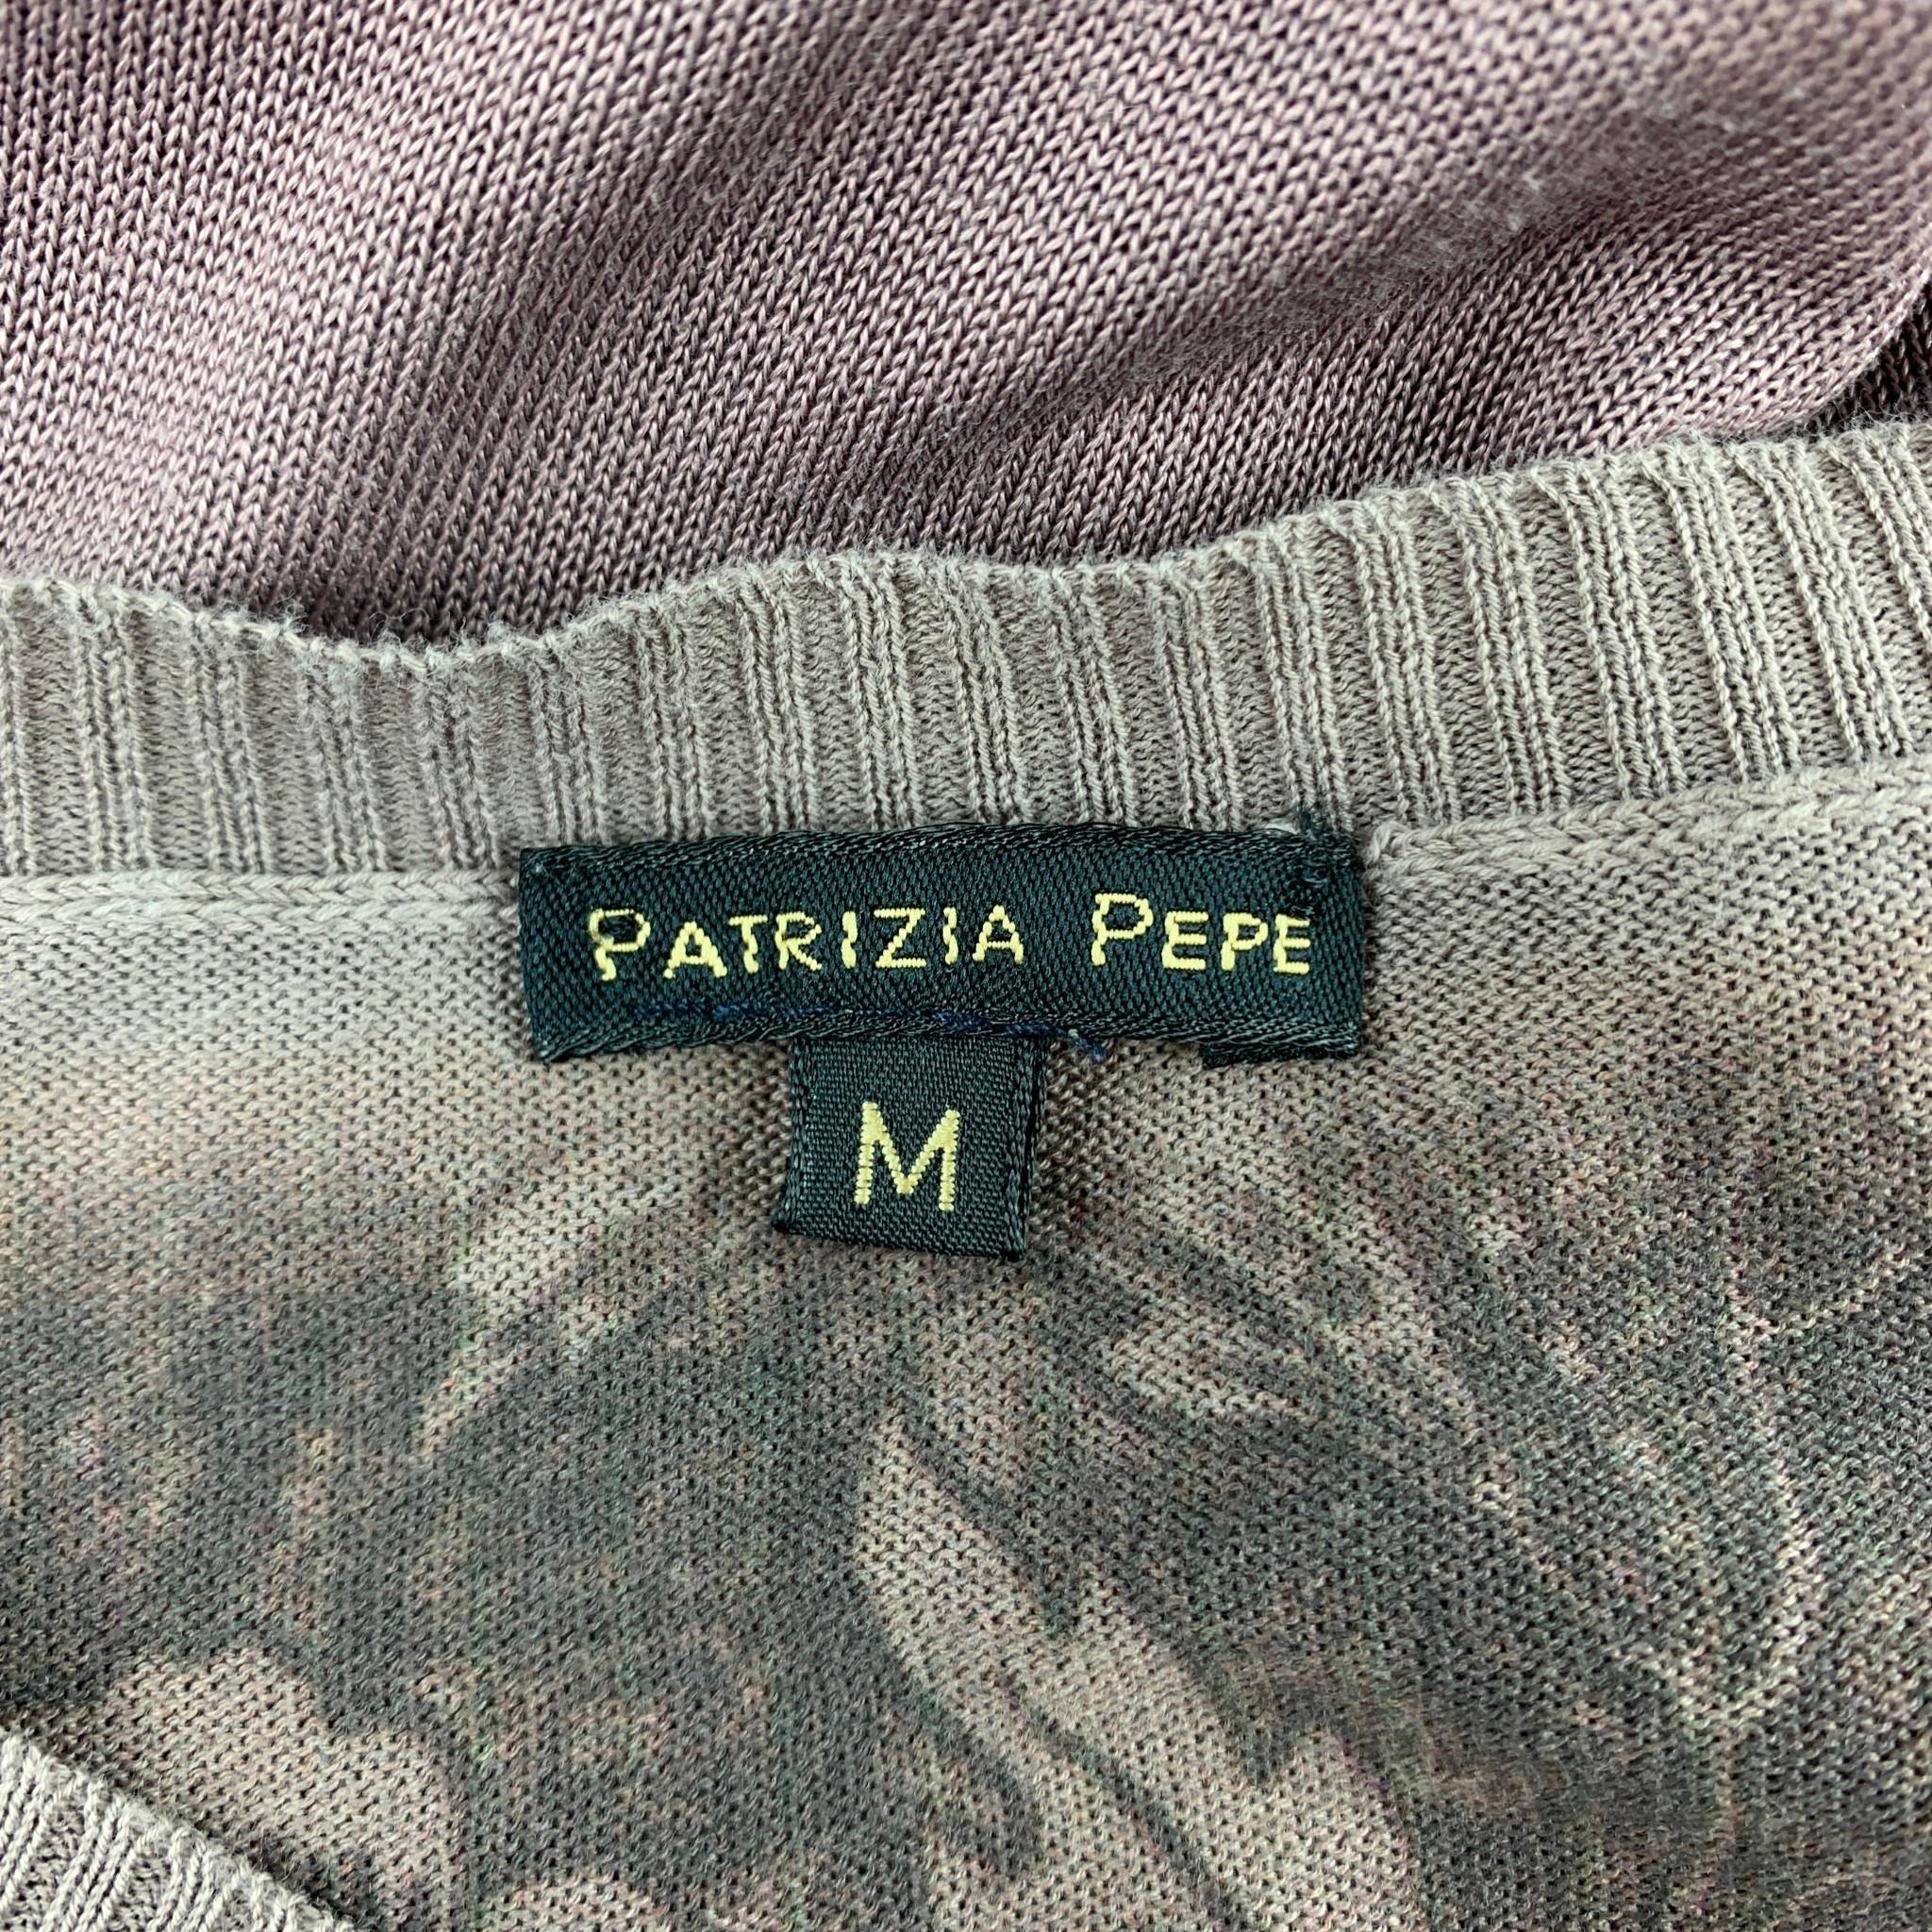 PATRIZIA PEPE Size M Taupe & Brown Ombre Cotton / Silk V-Neck Pullover 1